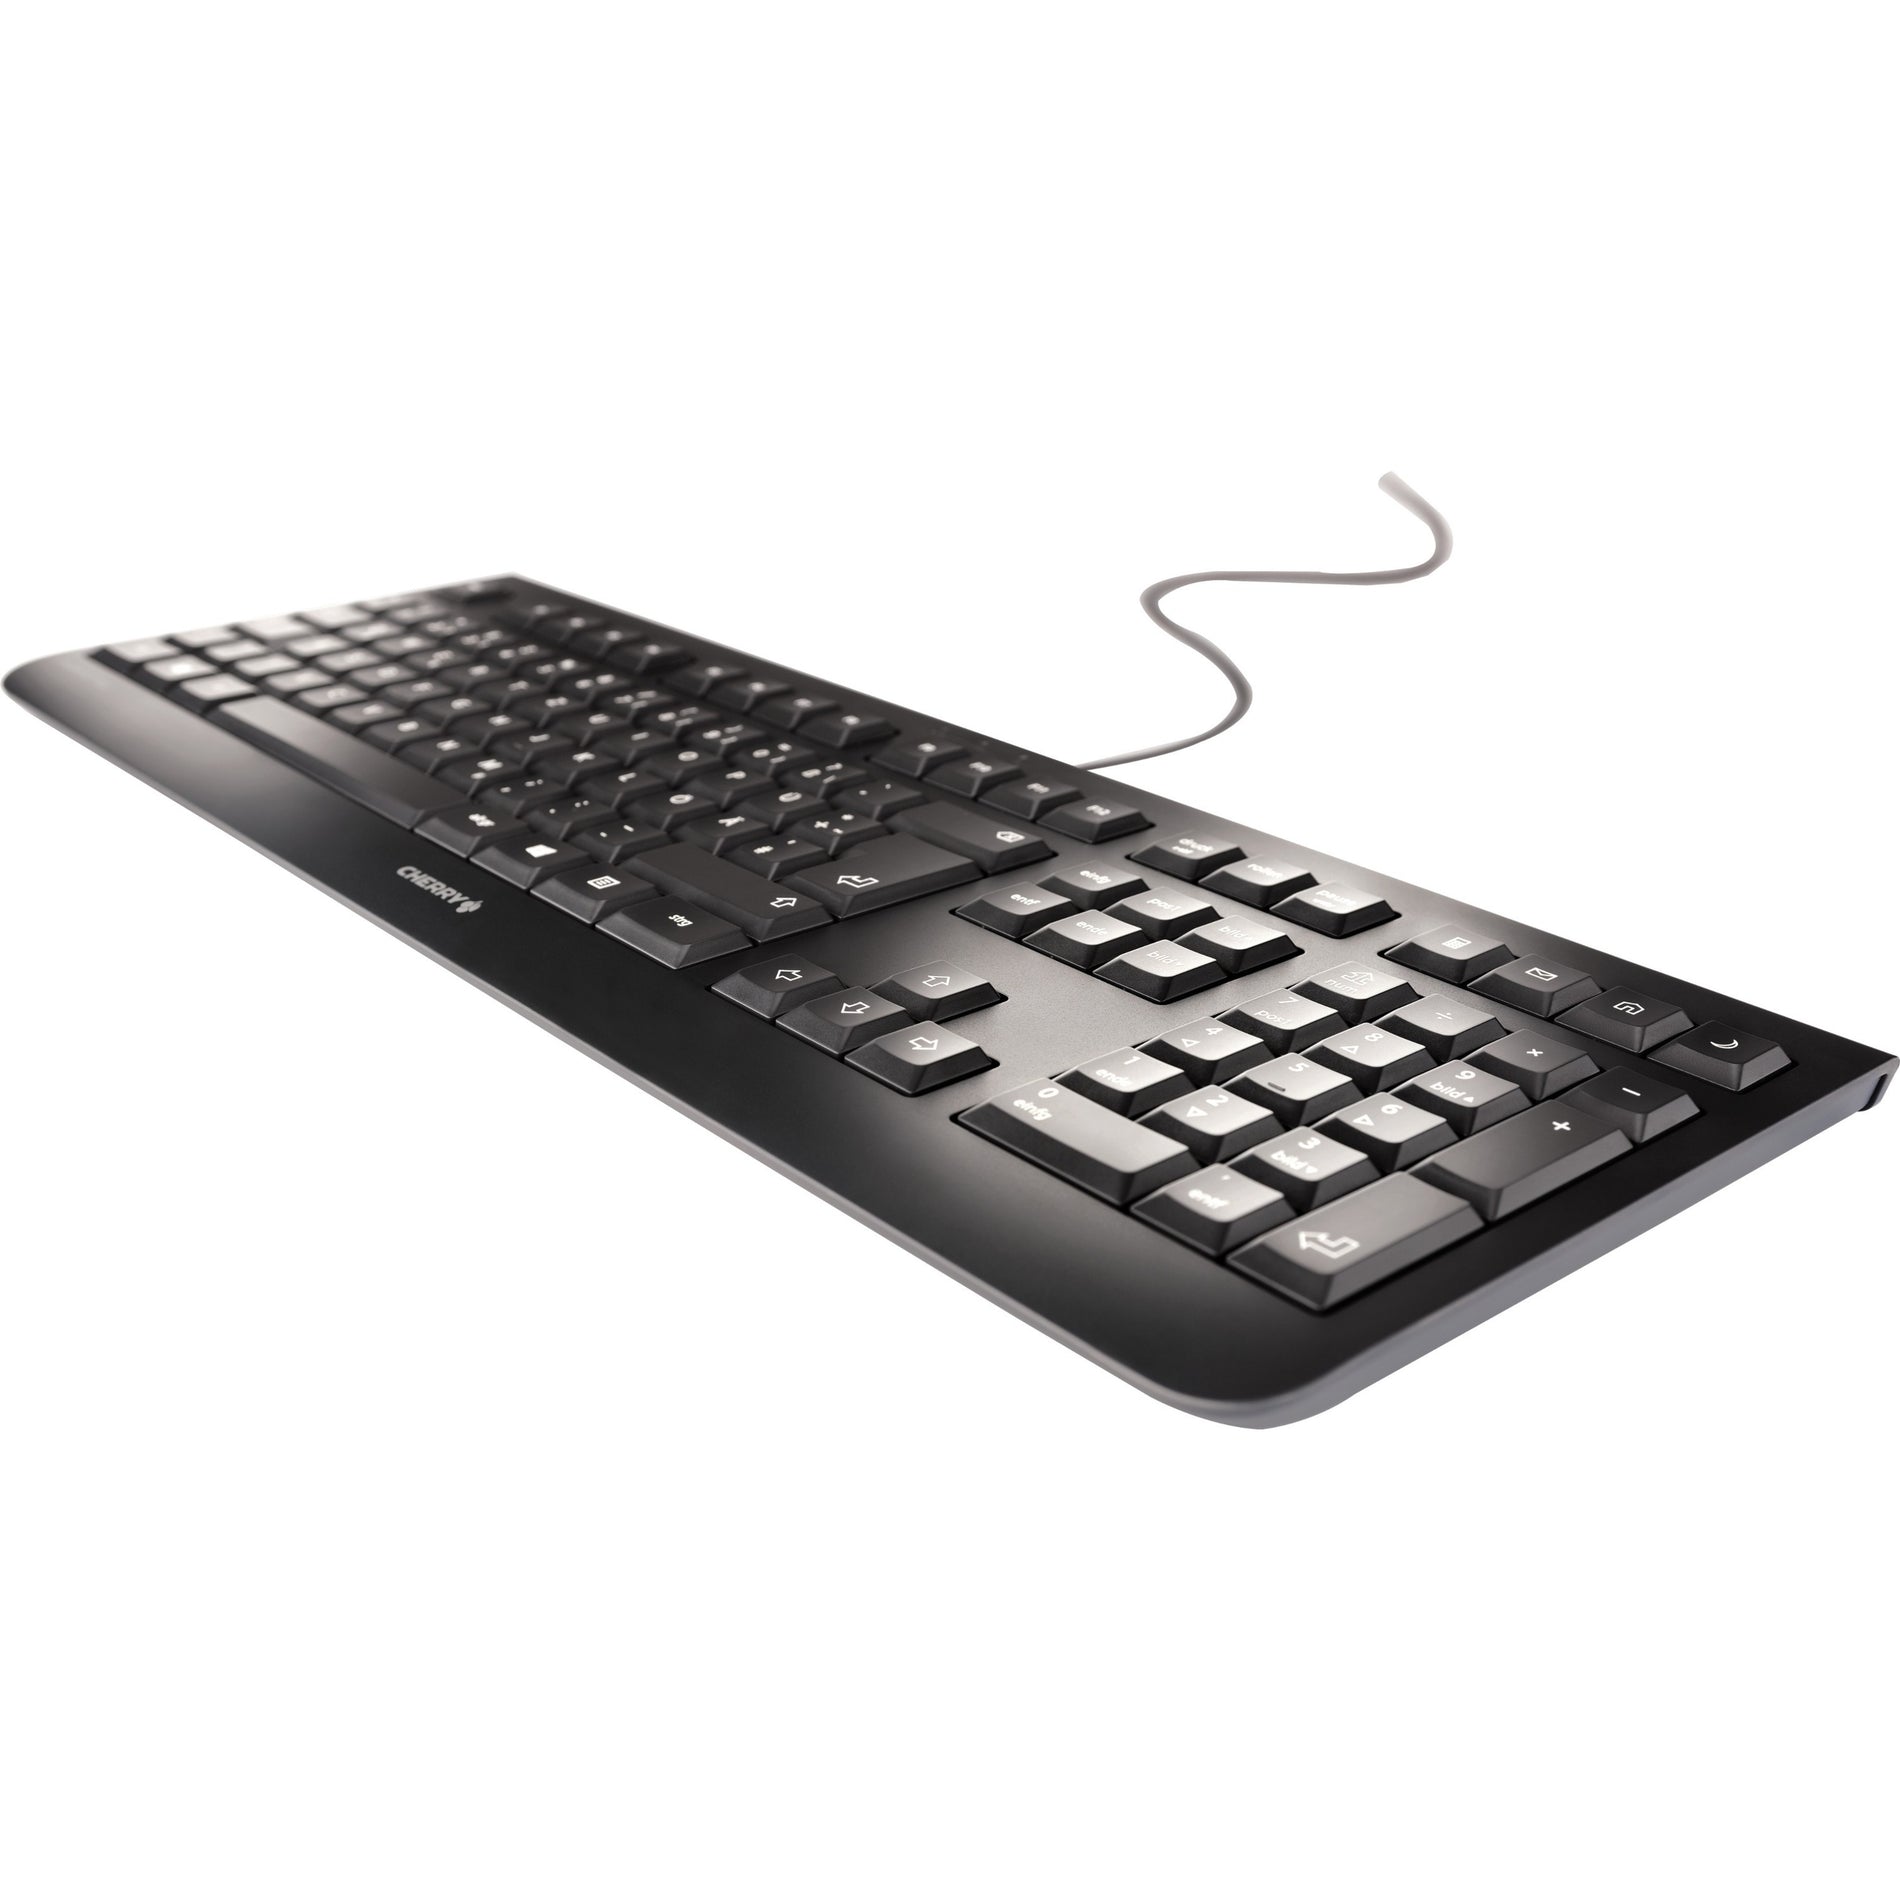 CHERRY JK-0800IT-2 KC 1000 Keyboard, Italian Layout, USB Wired, Black